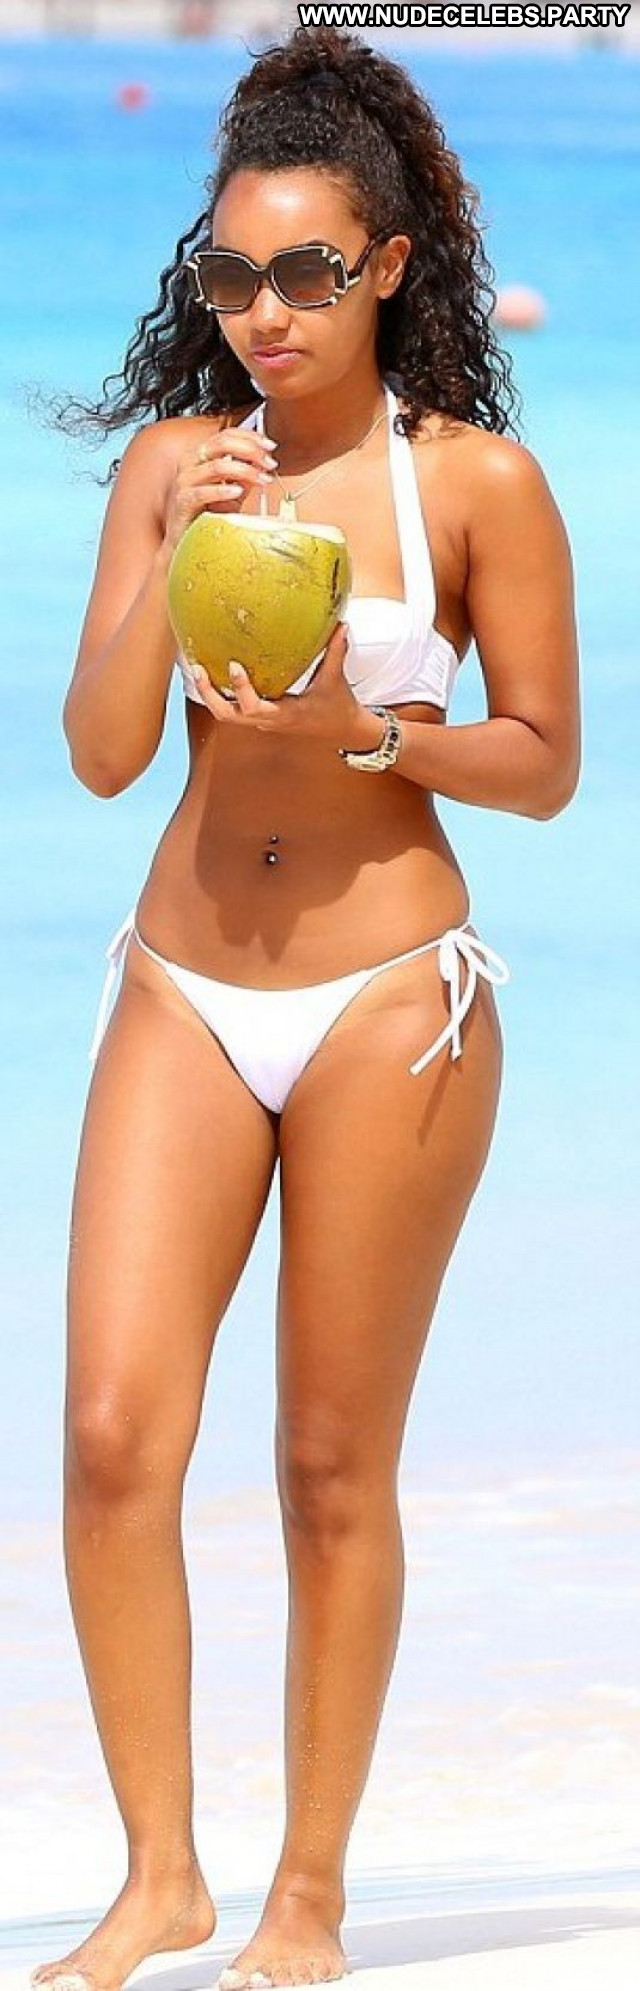 Leigh Anne Pinnock The Beach Bikini Beach Celebrity Posing Hot Babe